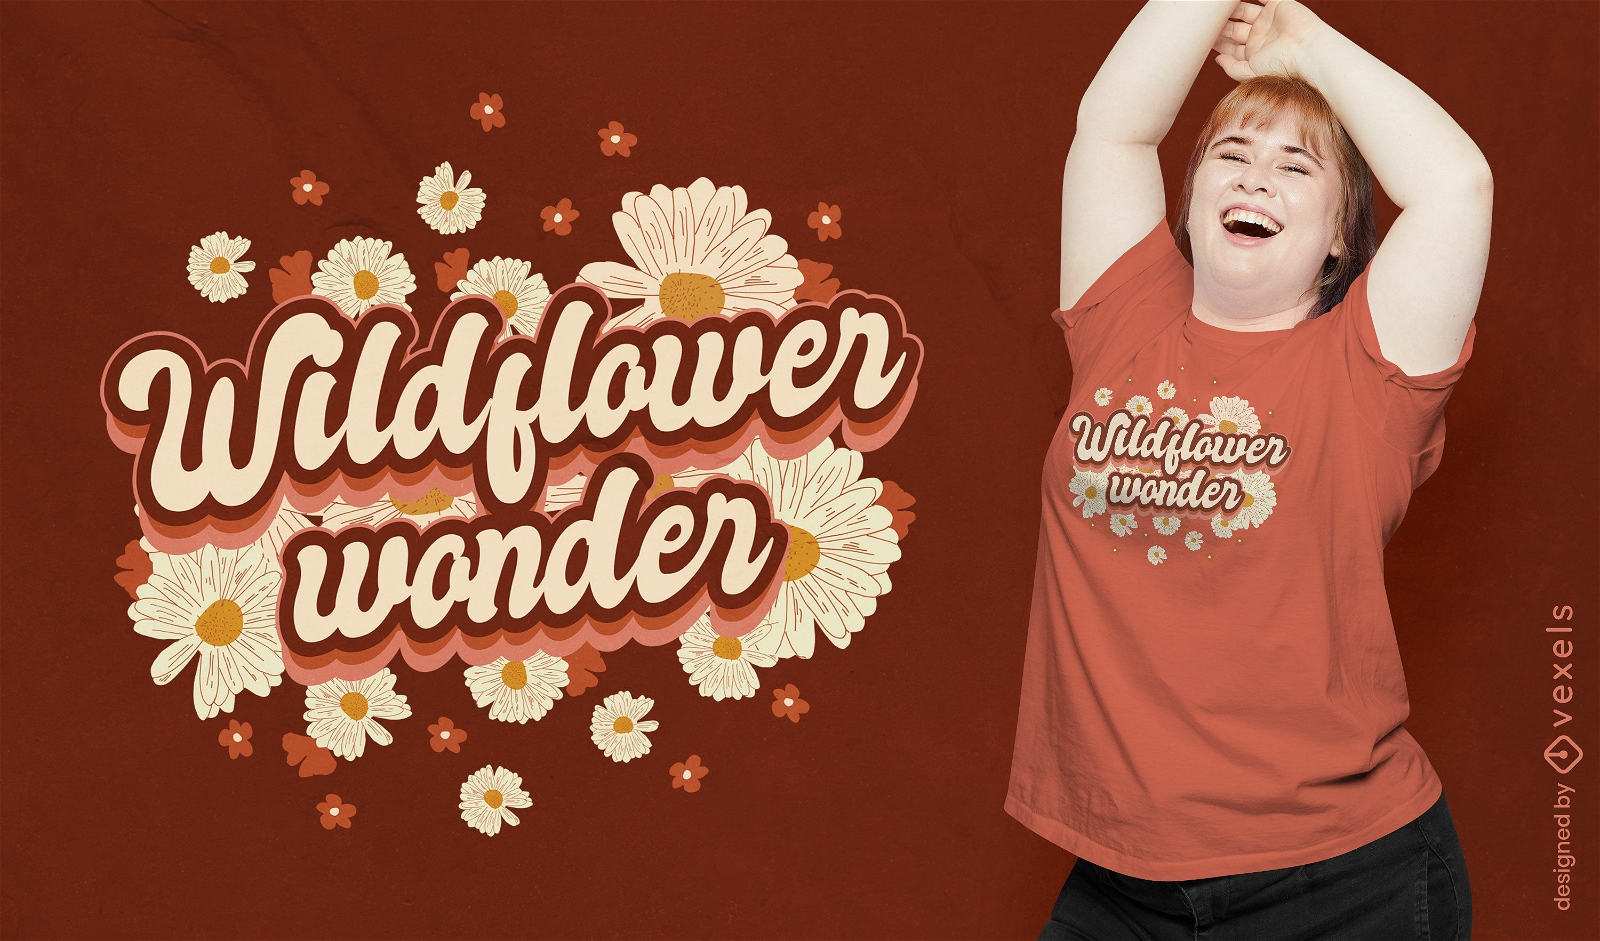 Wildflower wonder floral quote t-shirt design